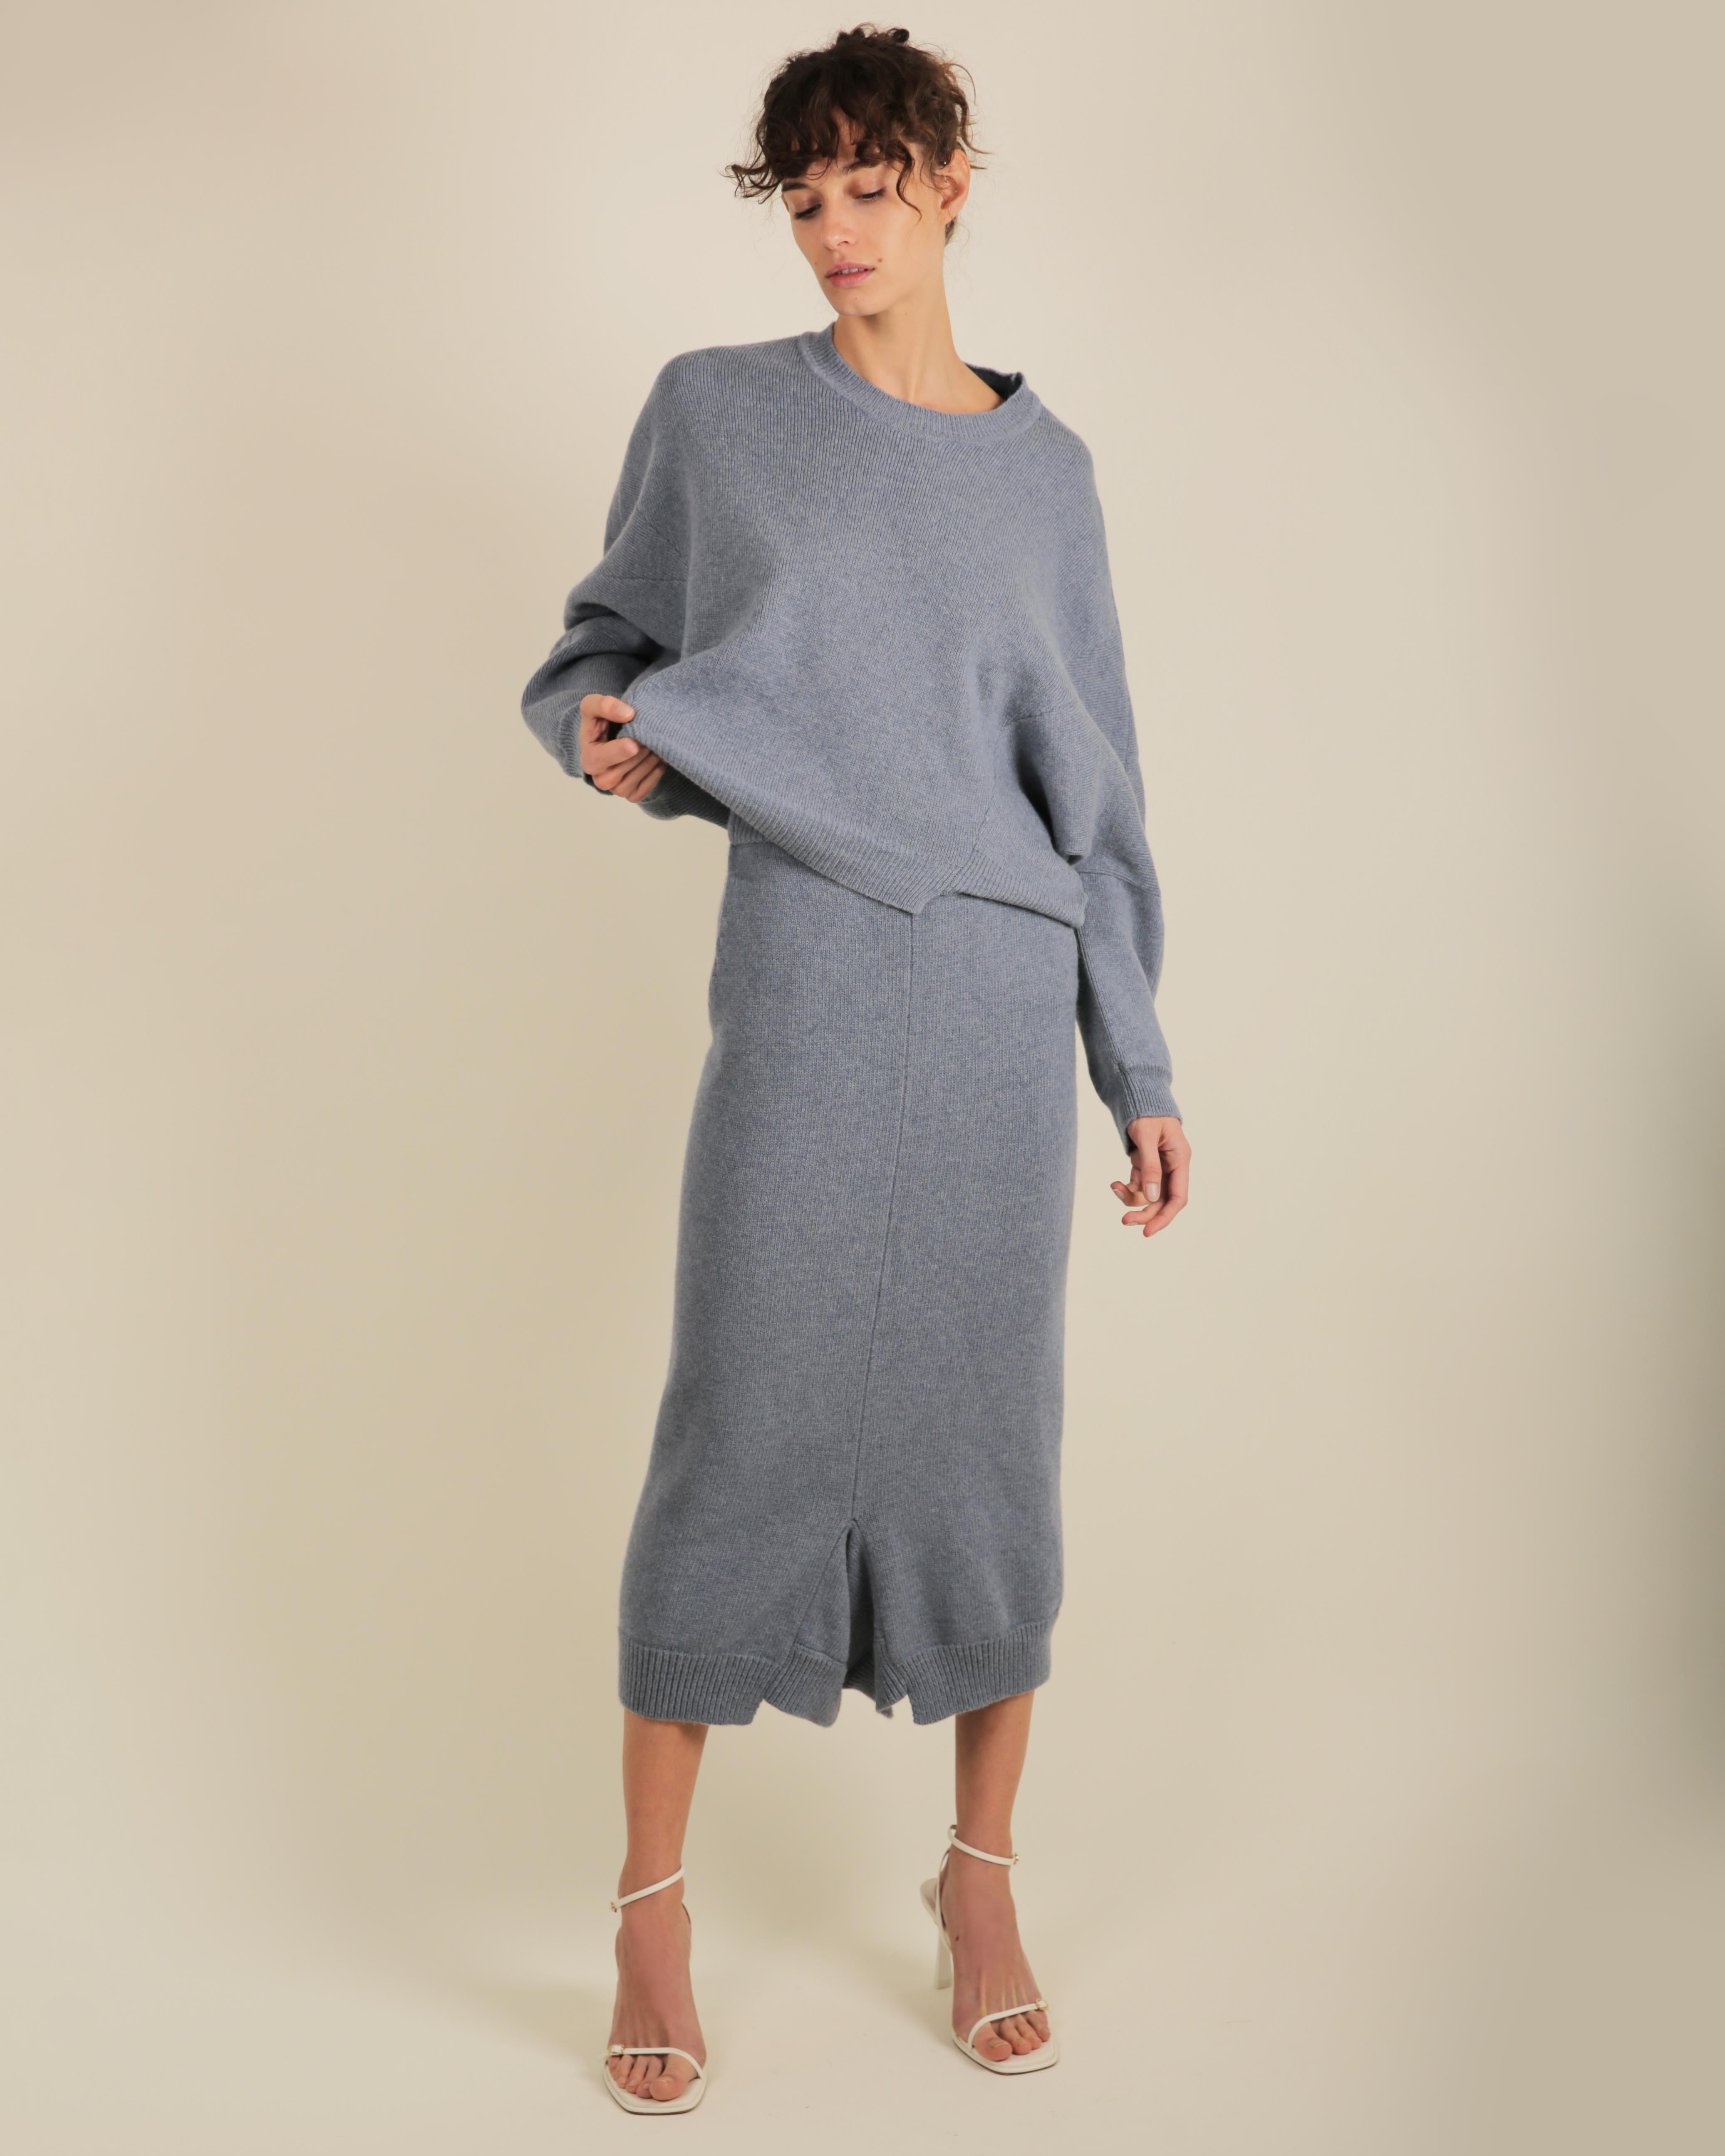 Stella McCartney Fall18 blue oversized wool alpaca matching sweater dress pants For Sale 2